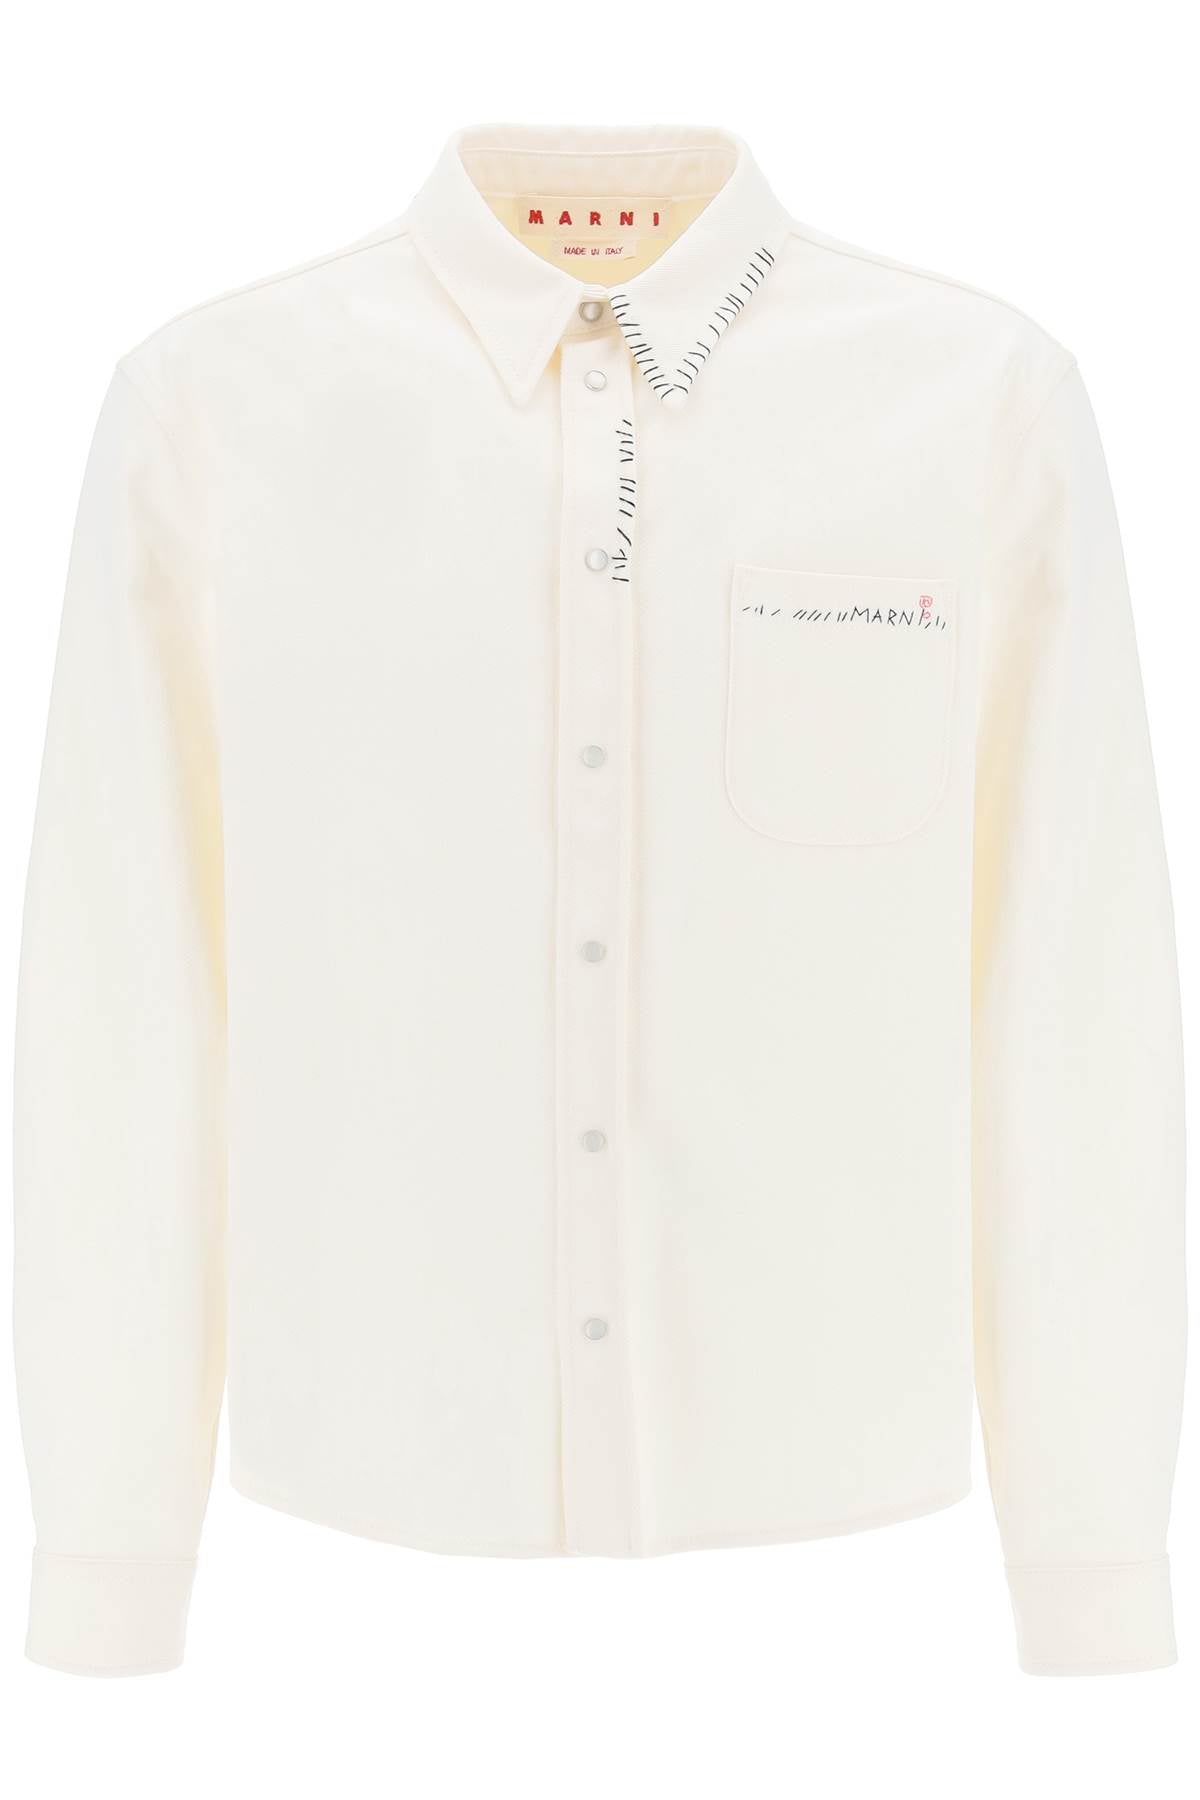 八分棉斜紋布外套式襯衫 CUJU0015S1TCX17 LILY WHITE